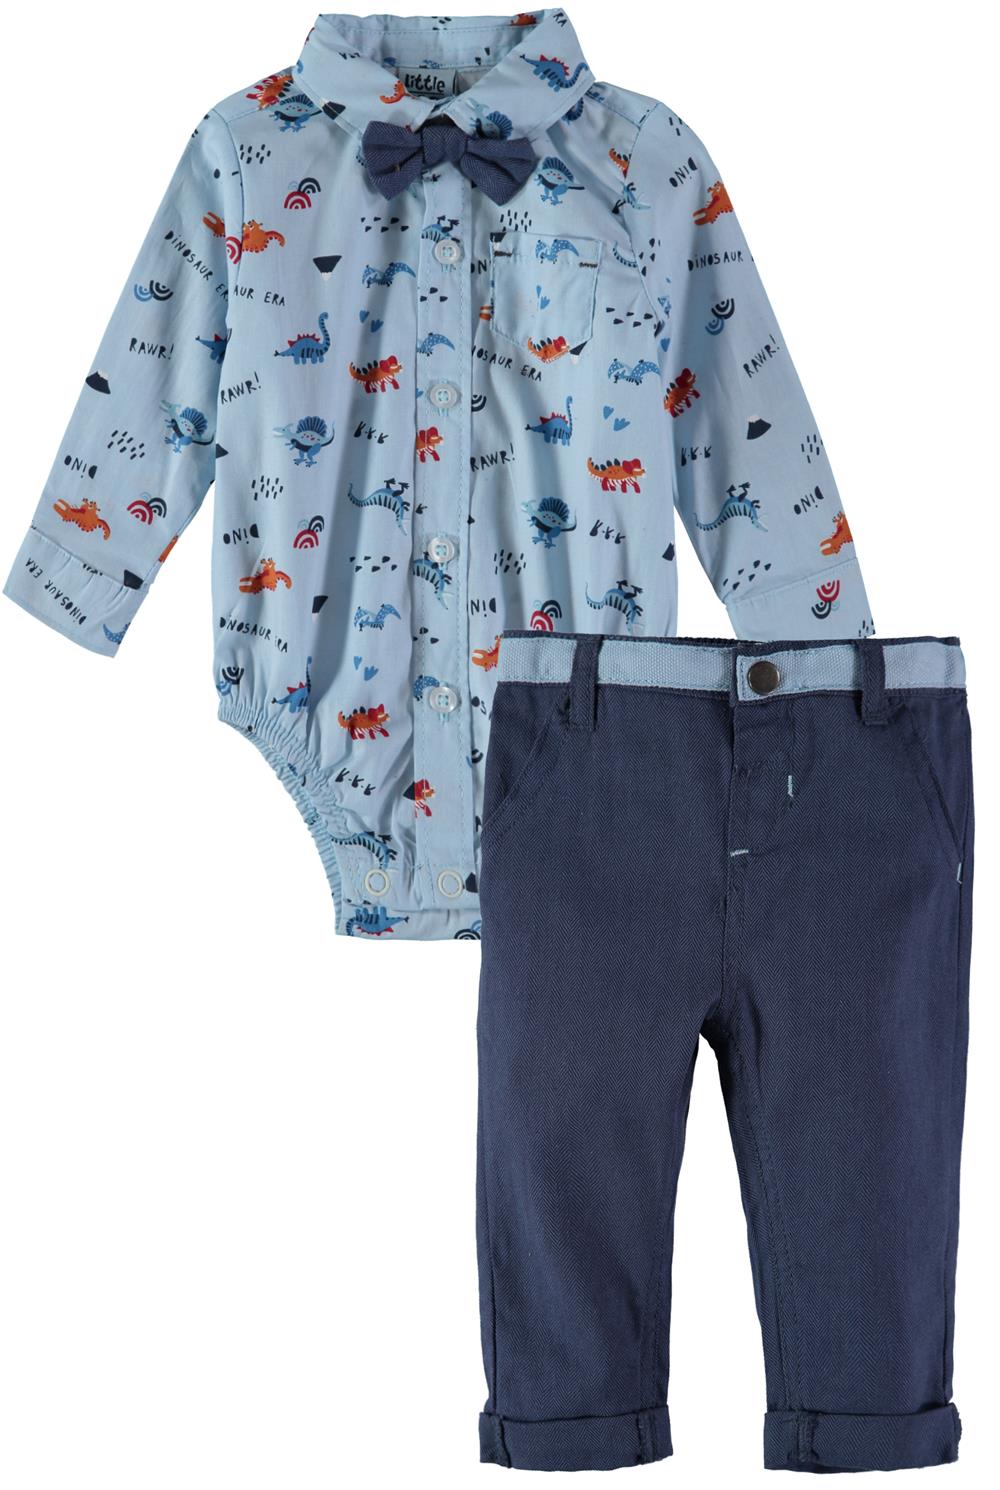 Little Lad Boys 0-9 Months Dinosaur Bodysuit Pant Set